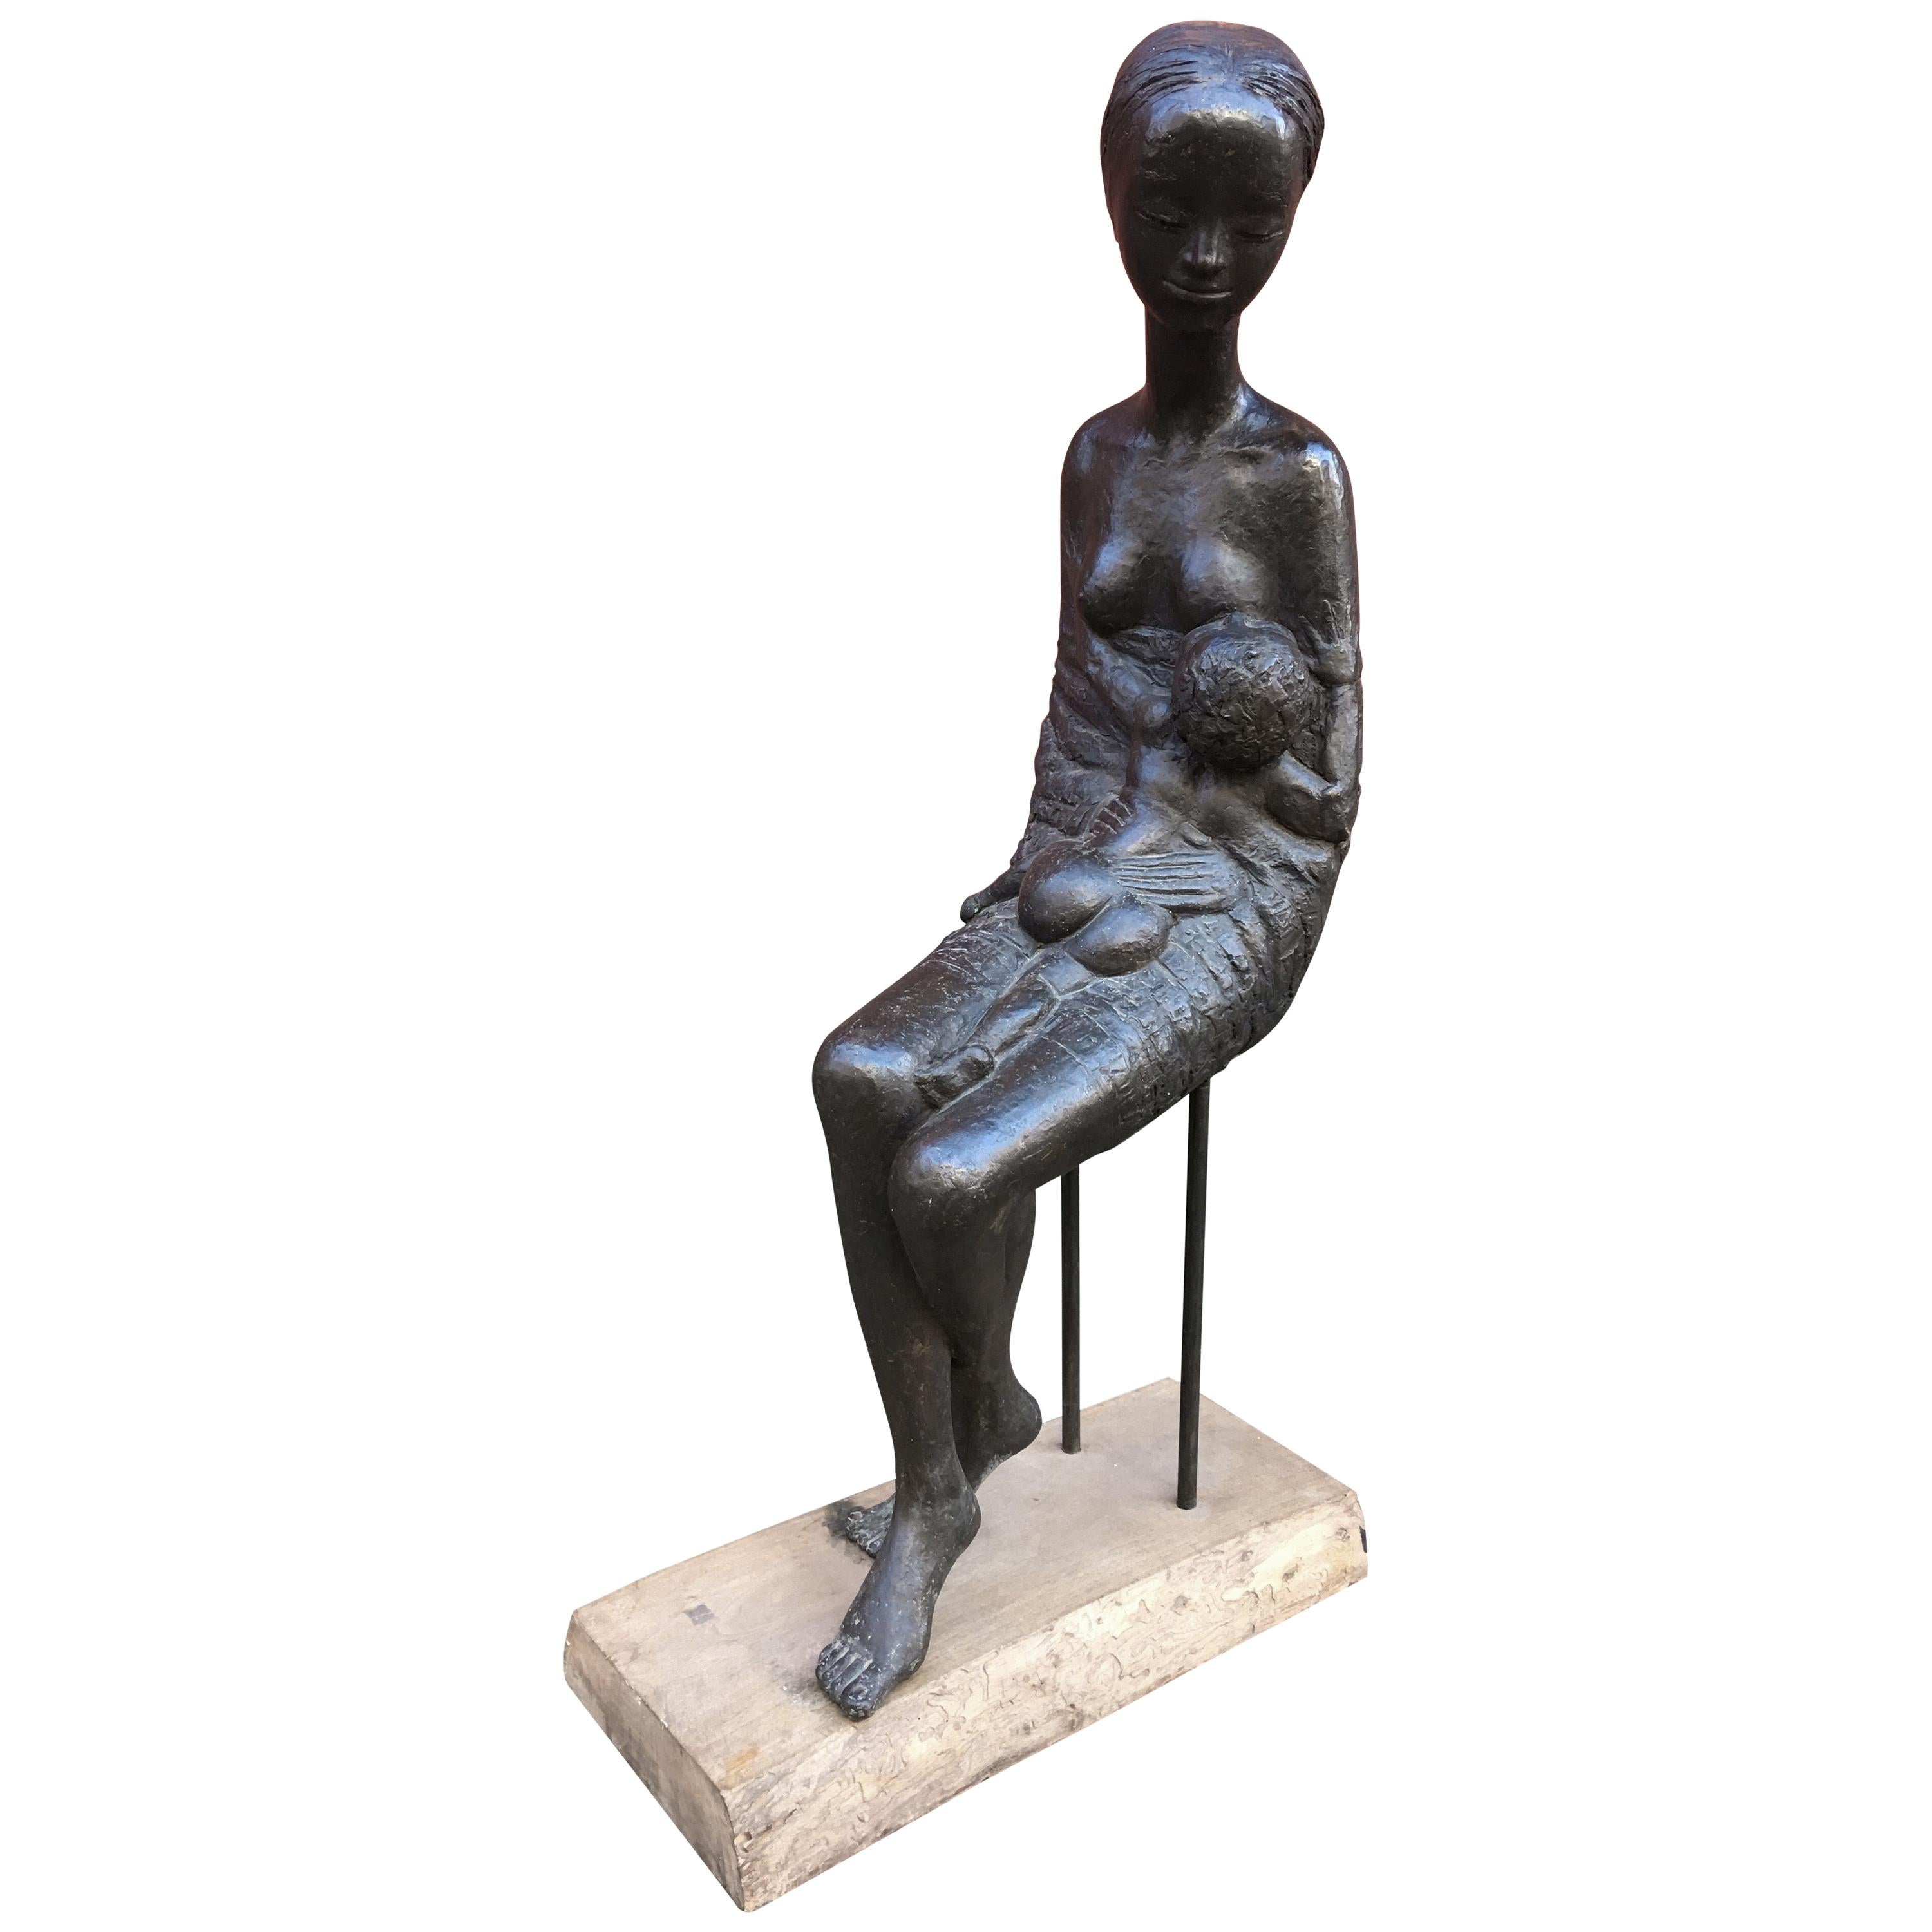 Pino Conte Bronze Life-Size Sculpture “Maternity”